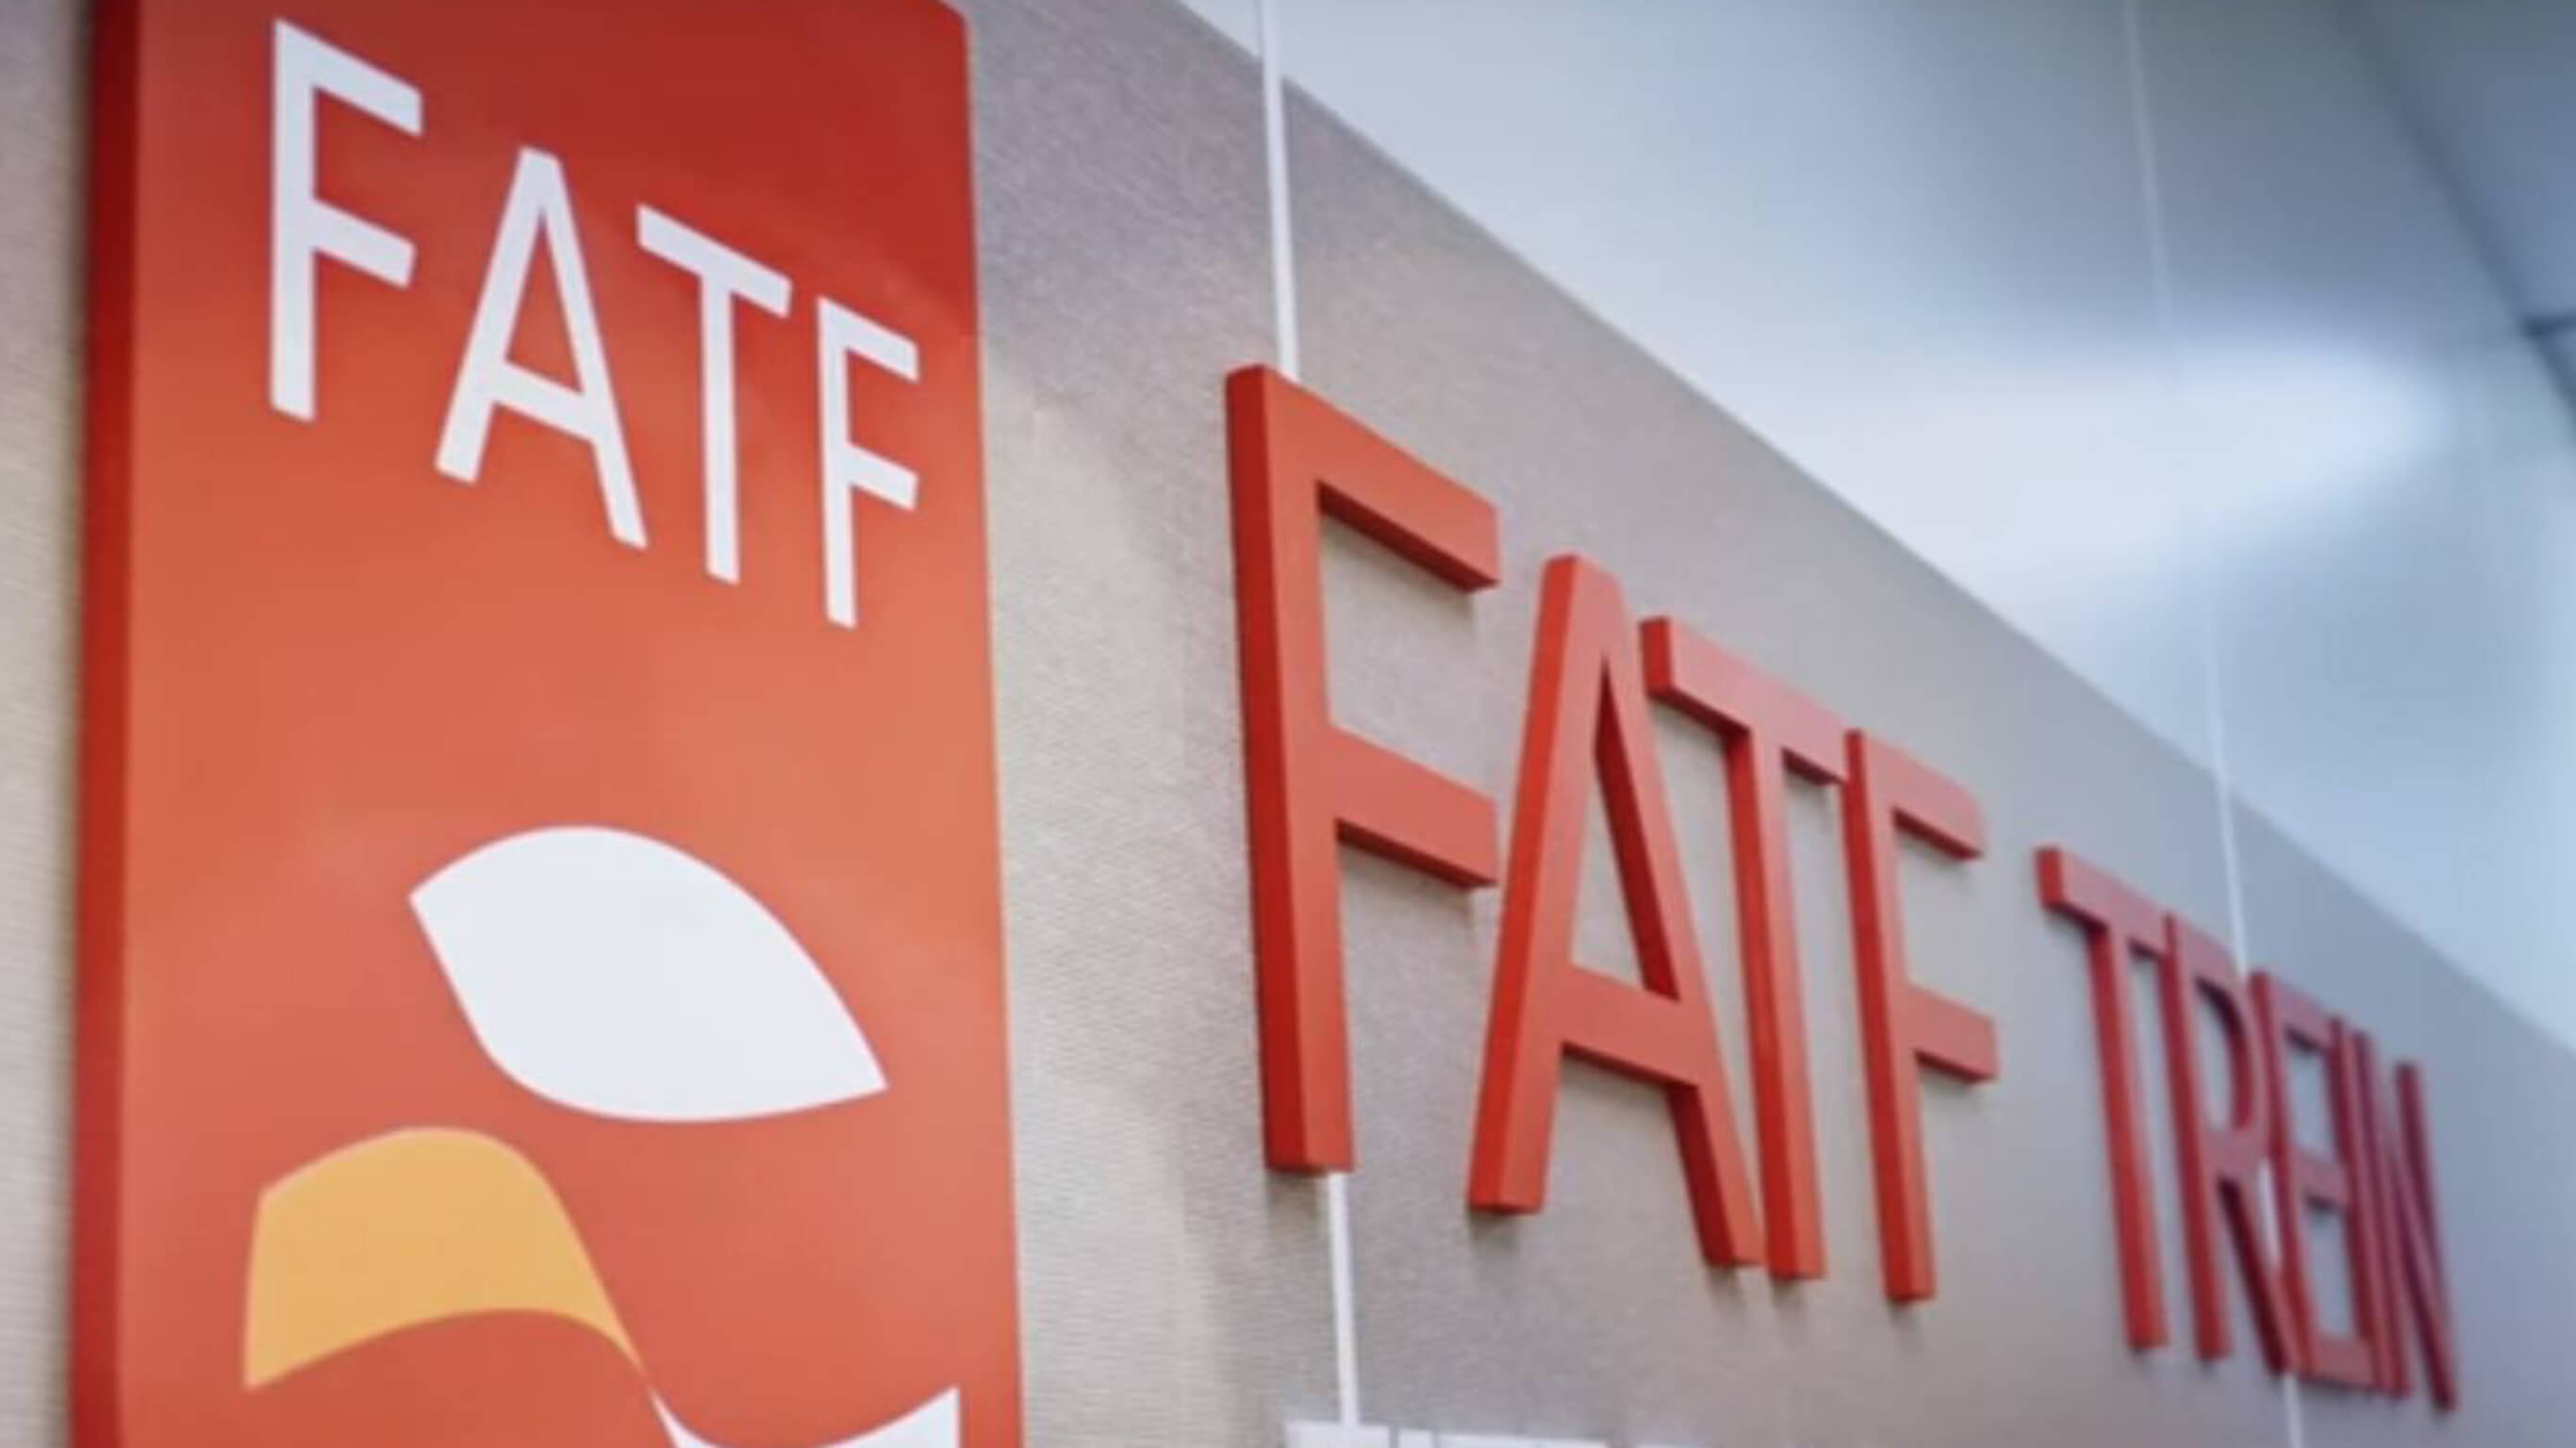 FATF разработает правила регулирования криптовалют к июню 2019 года